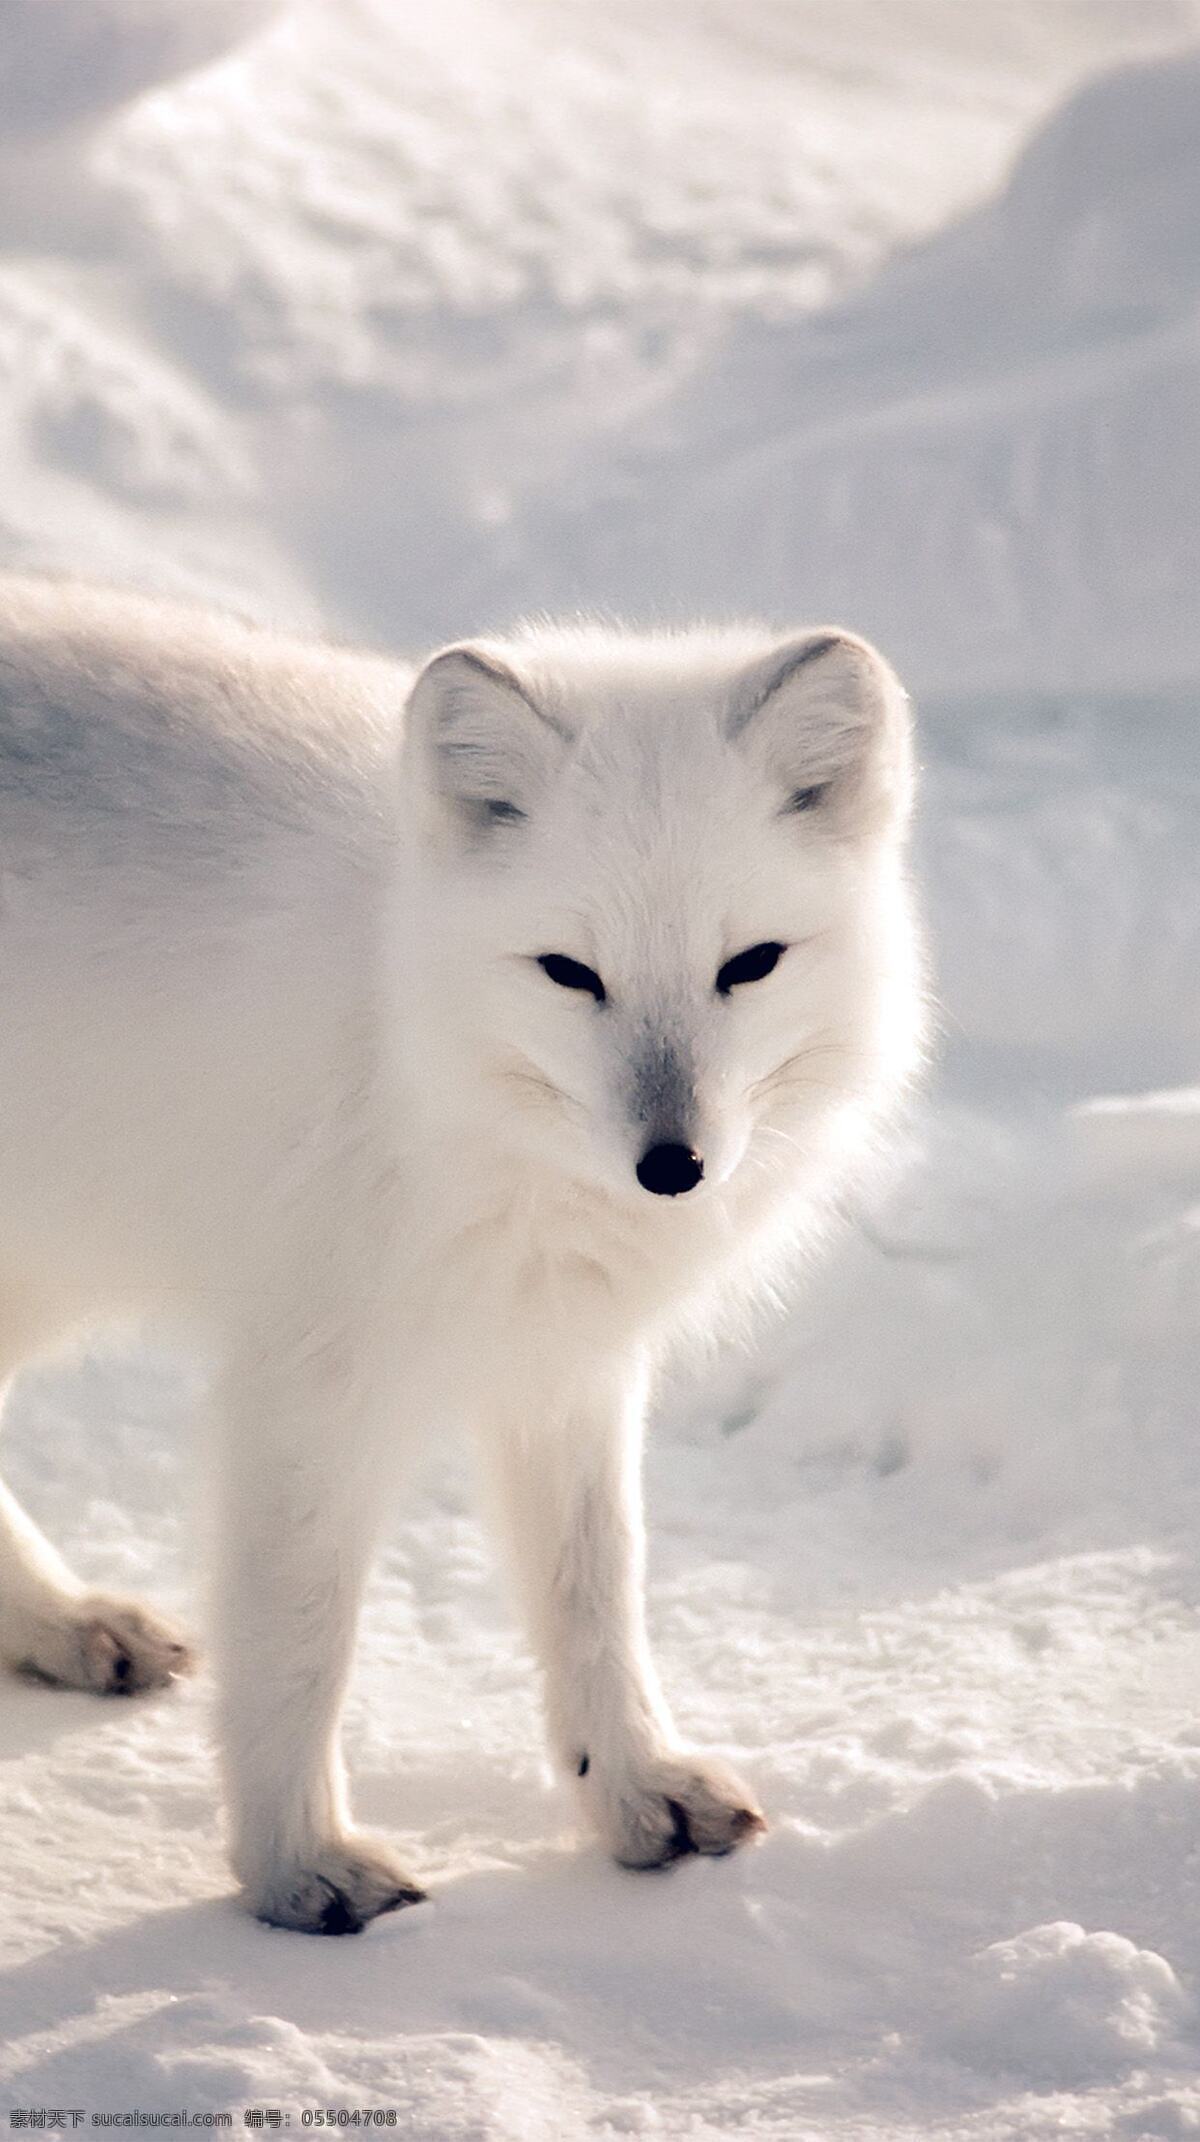 保护 白色 北极狐 白色北极狐 冰雪冬天 北极动物 大自然 保护野生动物 狐狸 生物世界 野生动物